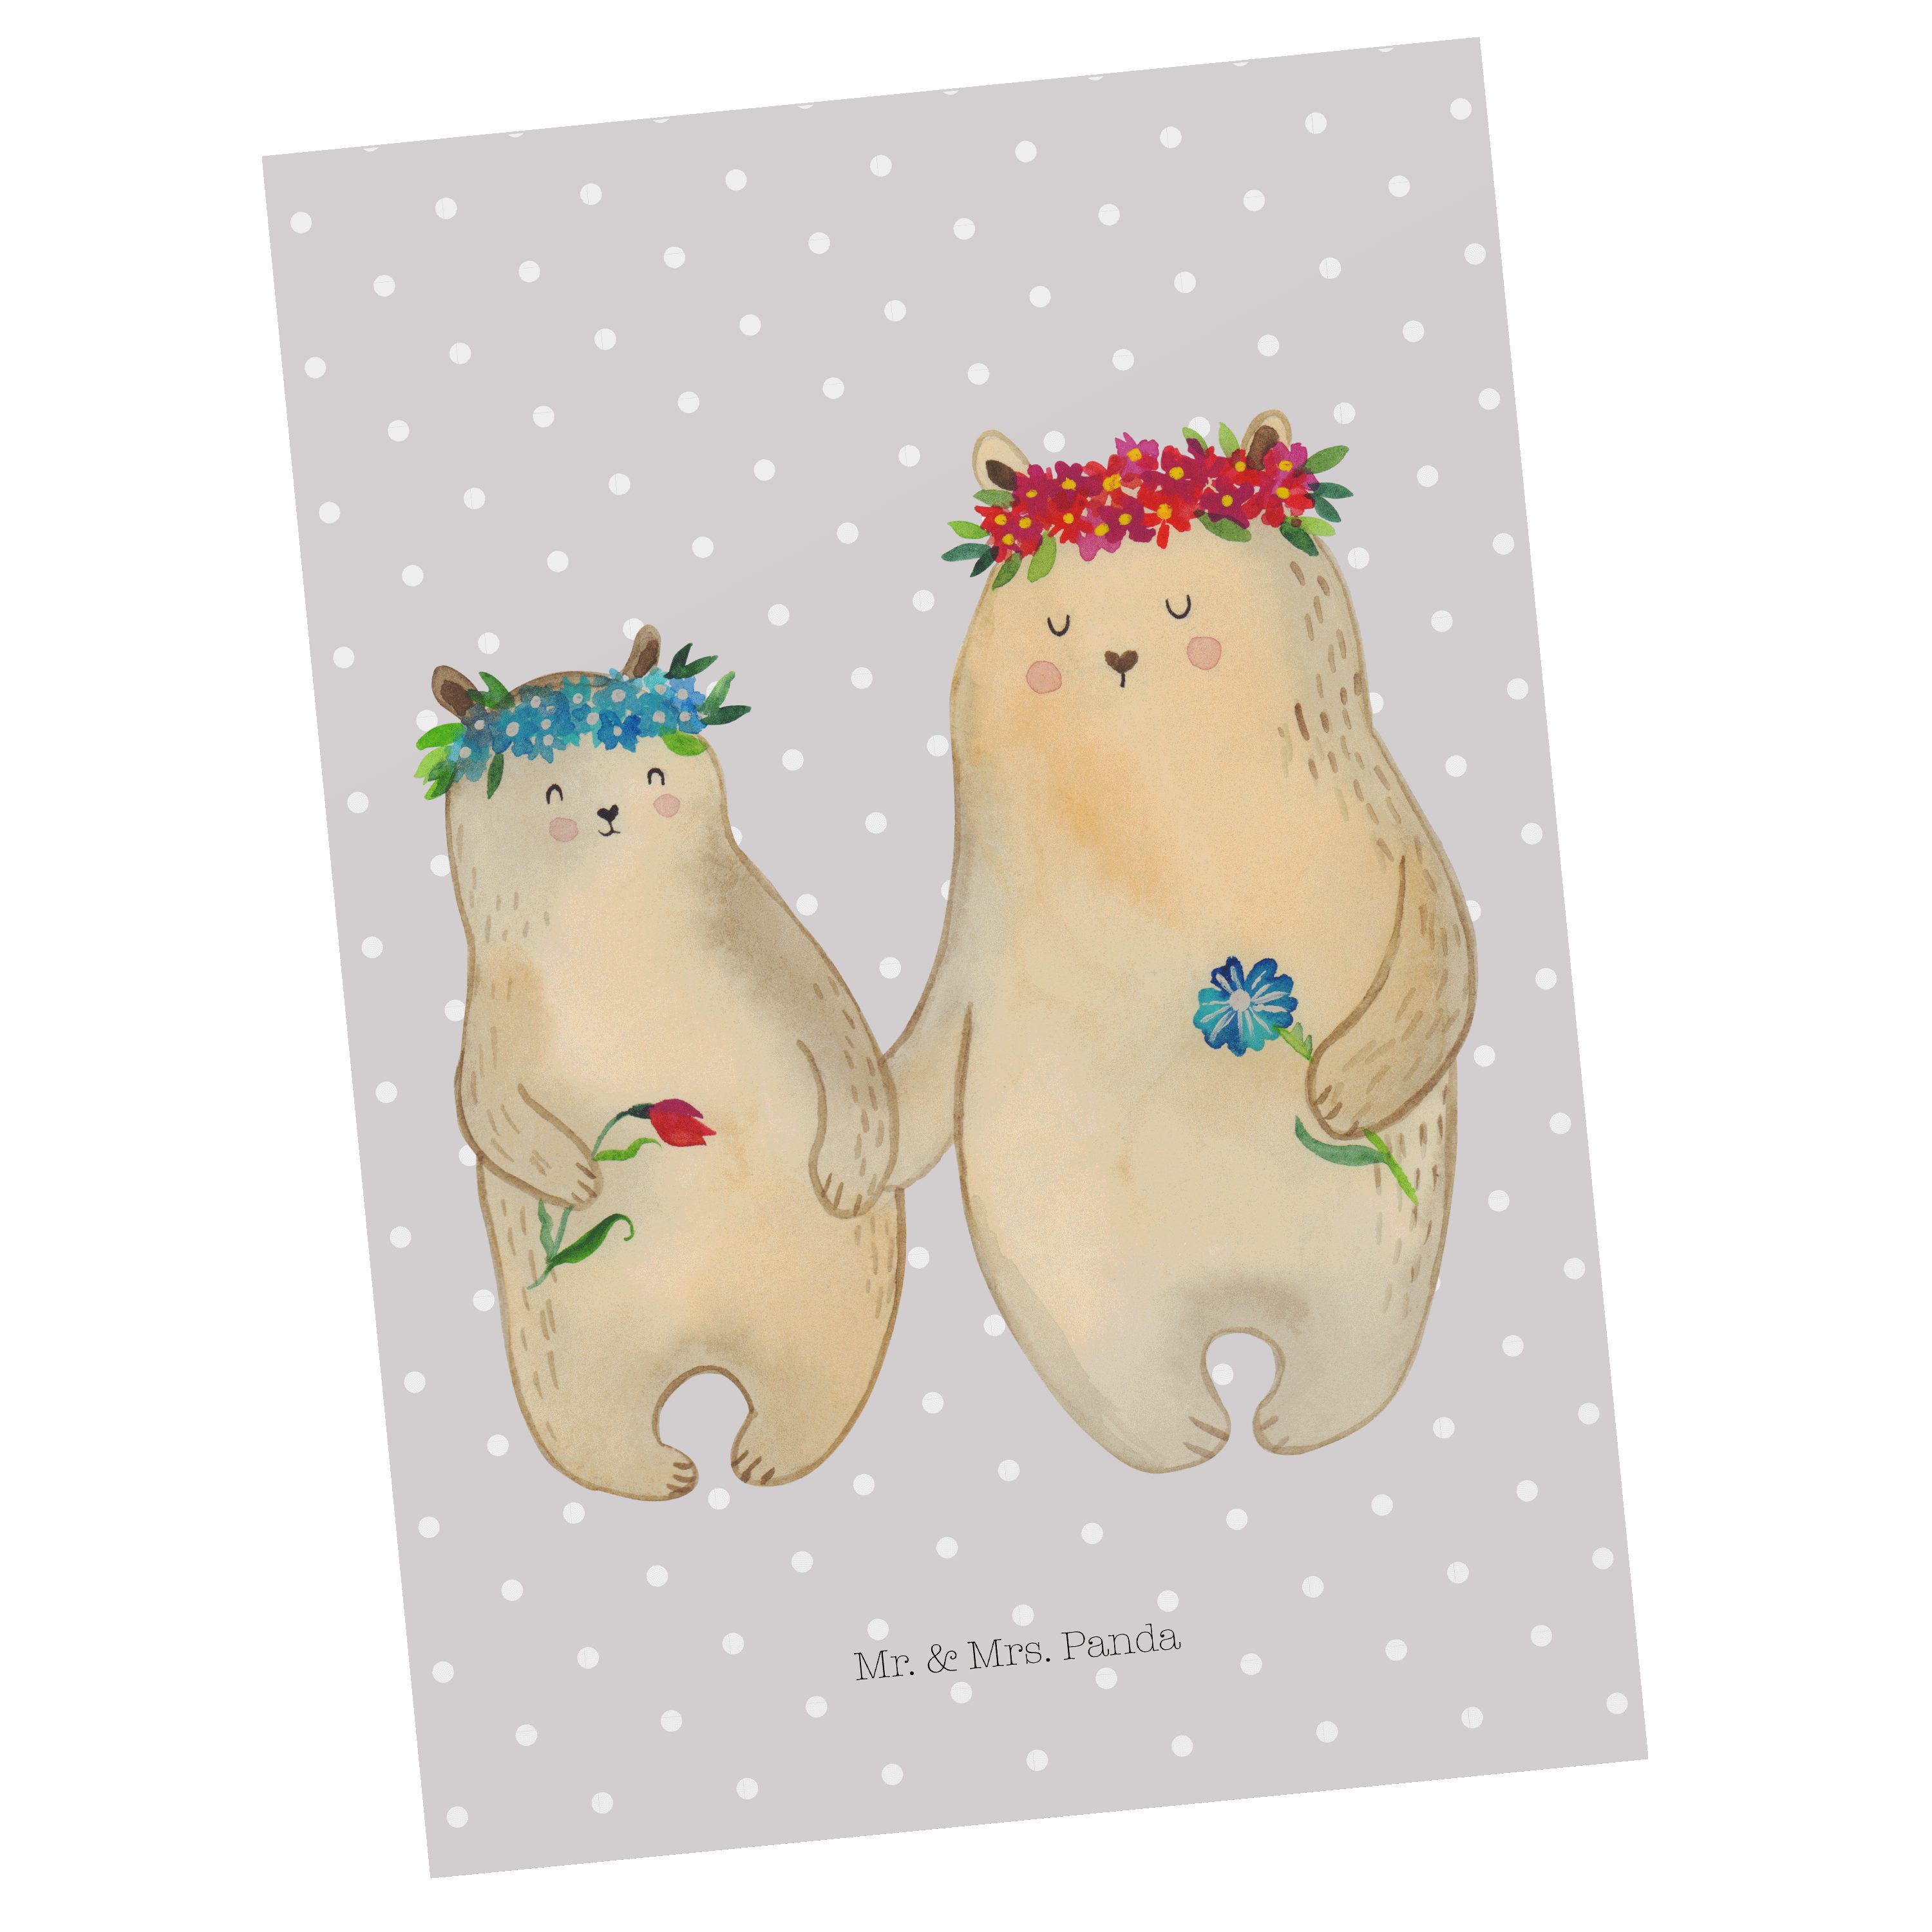 Mr. & Mrs. Panda Postkarte Bären mit Blumenkranz - Grau Pastell - Geschenk, Freundinnen, Geschen